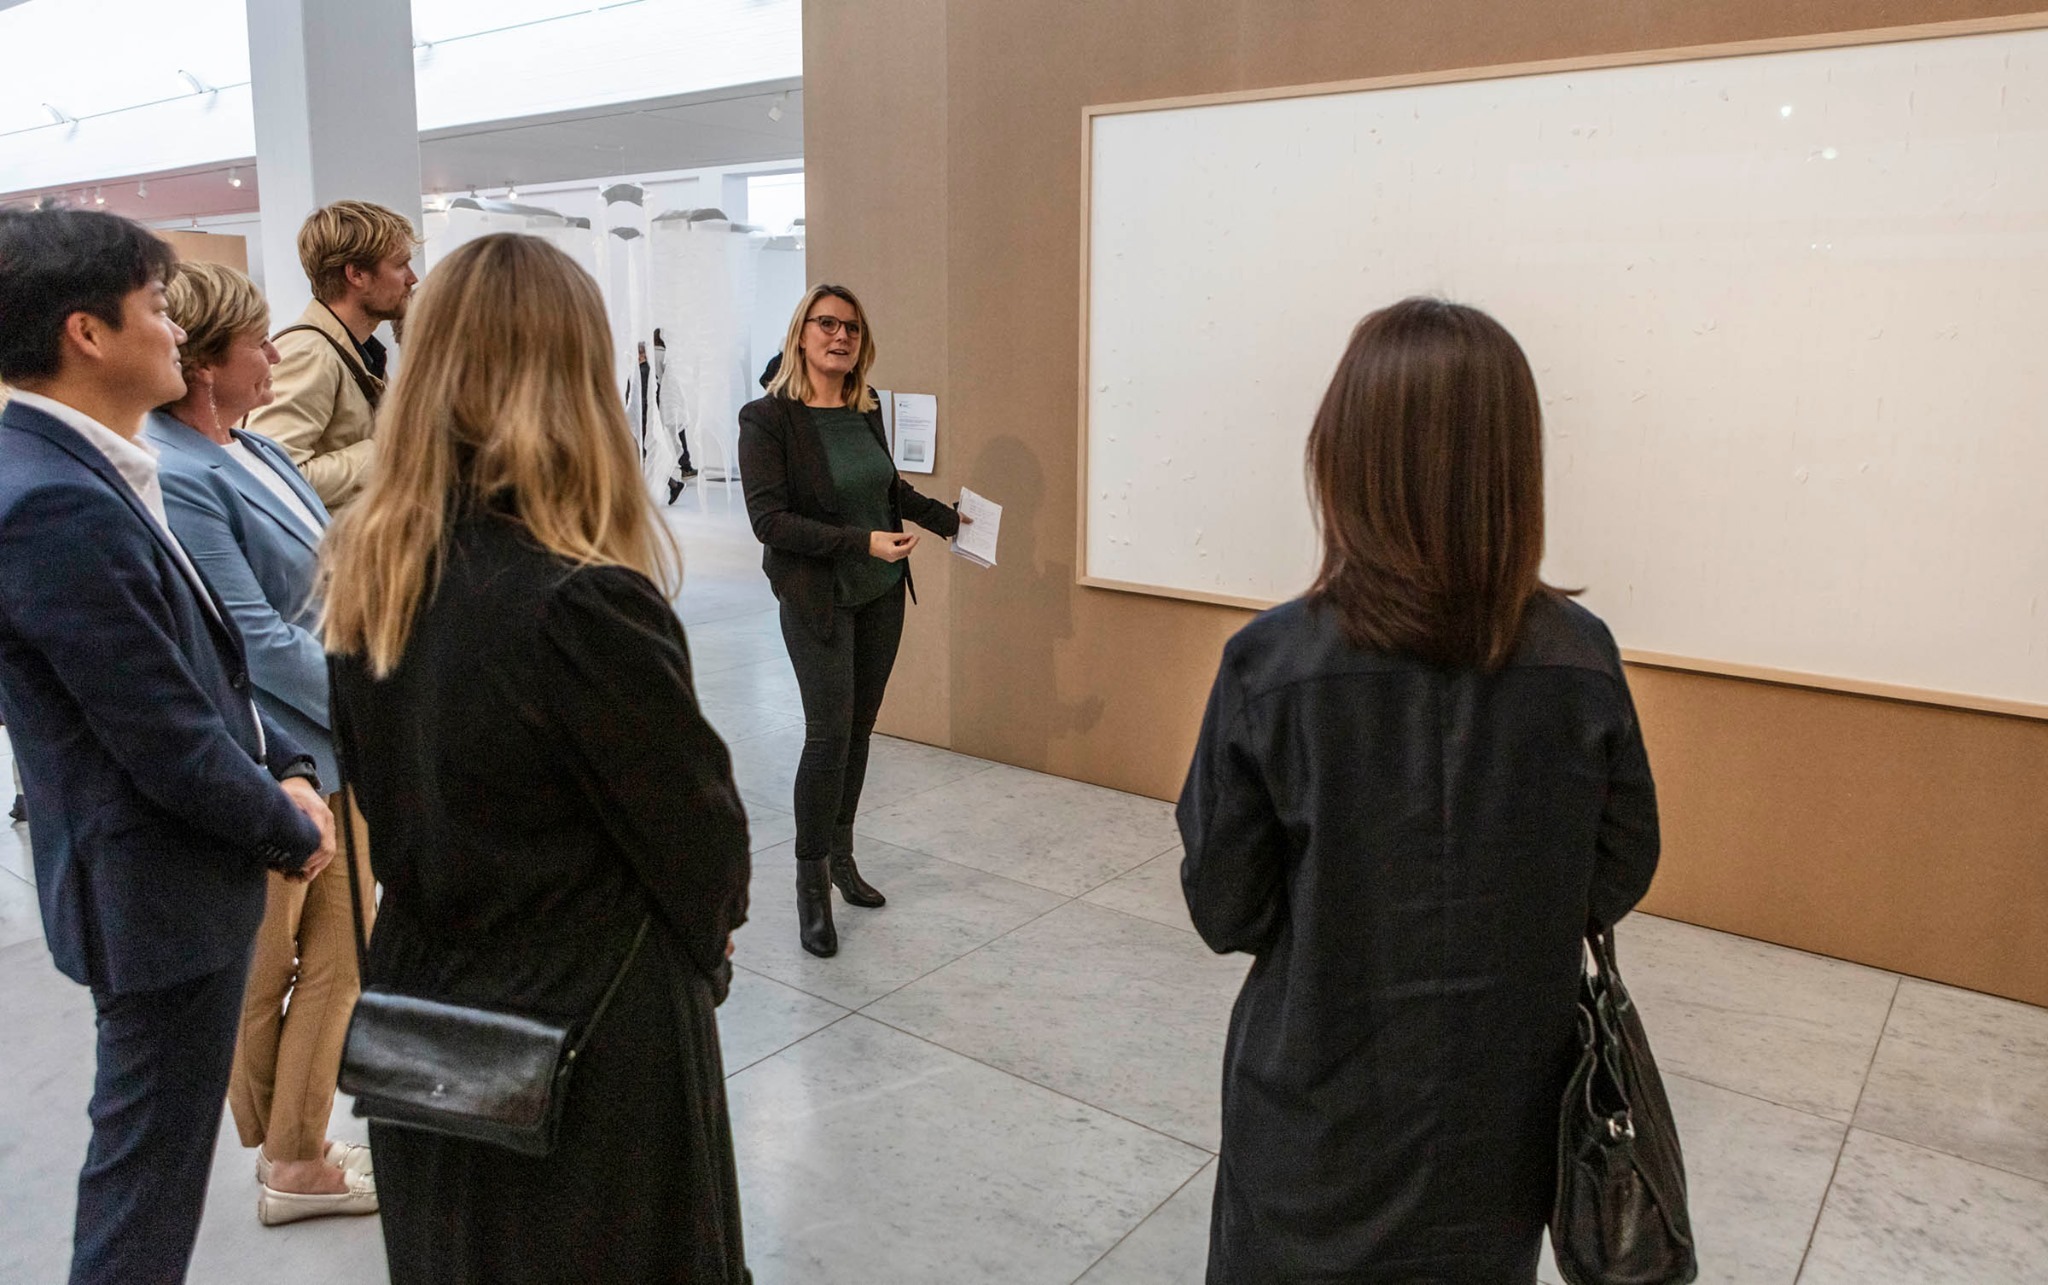 丹麥藝術家哈寧收博物館244萬薪酬卻交出2張空白畫布